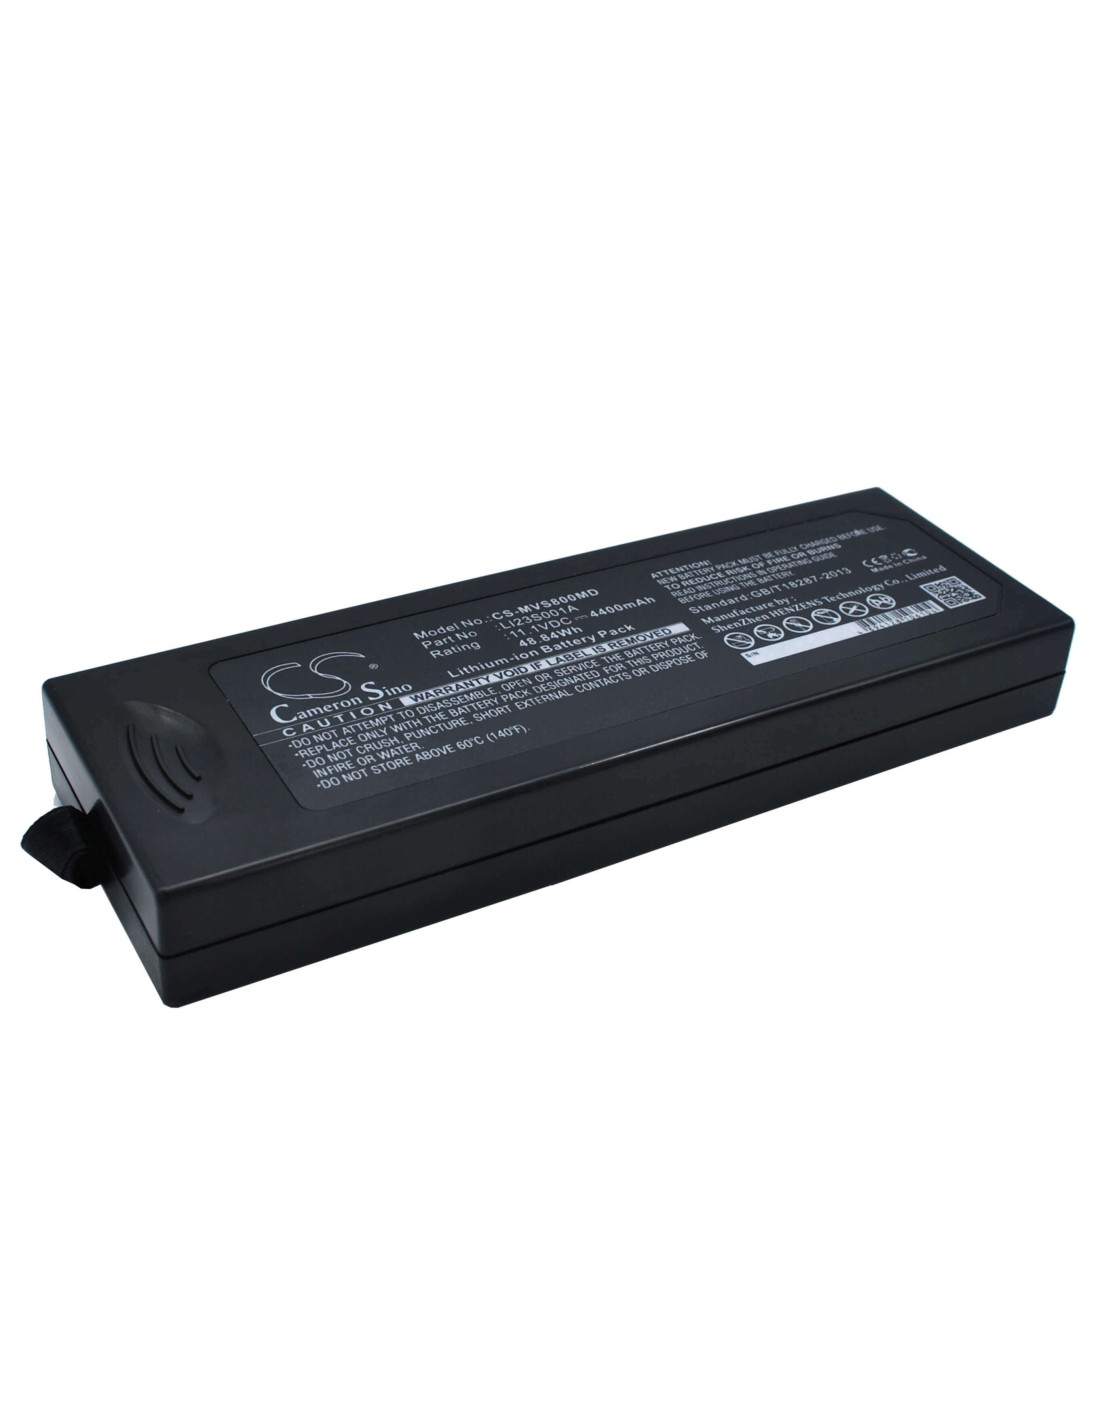 Battery for Mindray Vs800, Vs-800, Wato Ex-20 11.1V, 4400mAh - 48.84Wh